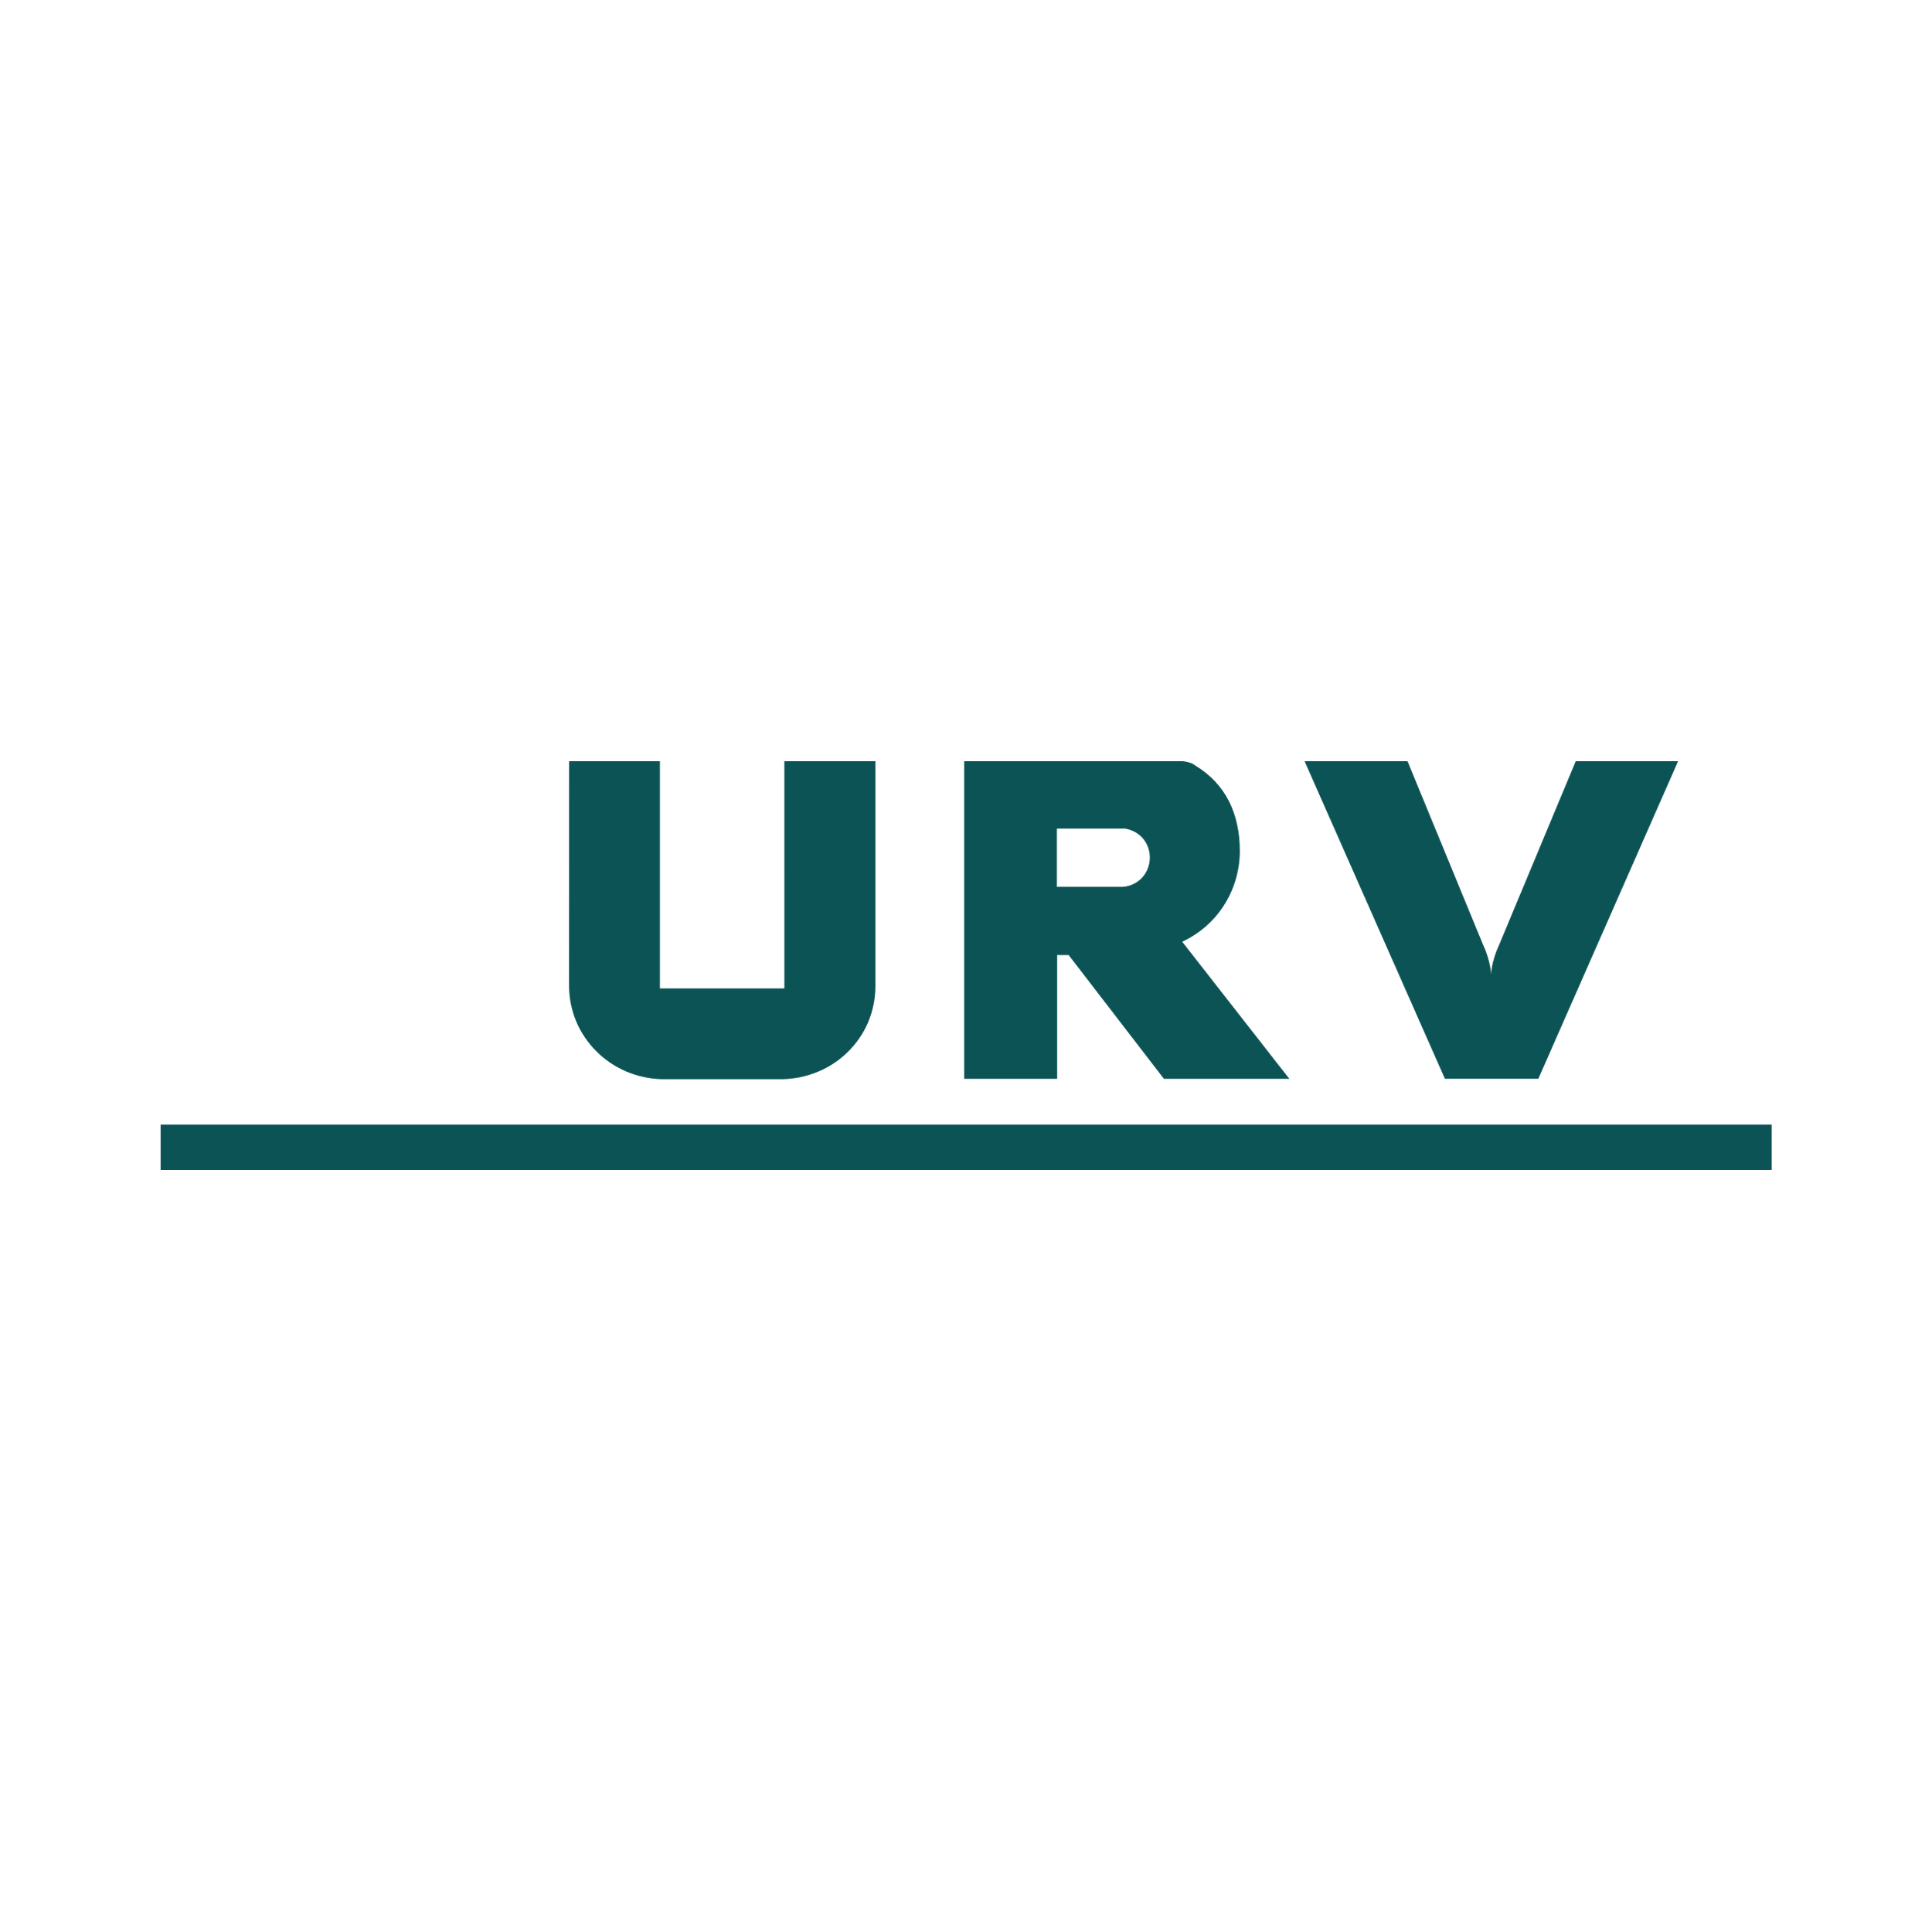 Union Reiseversicherung Logo Transparent Picture